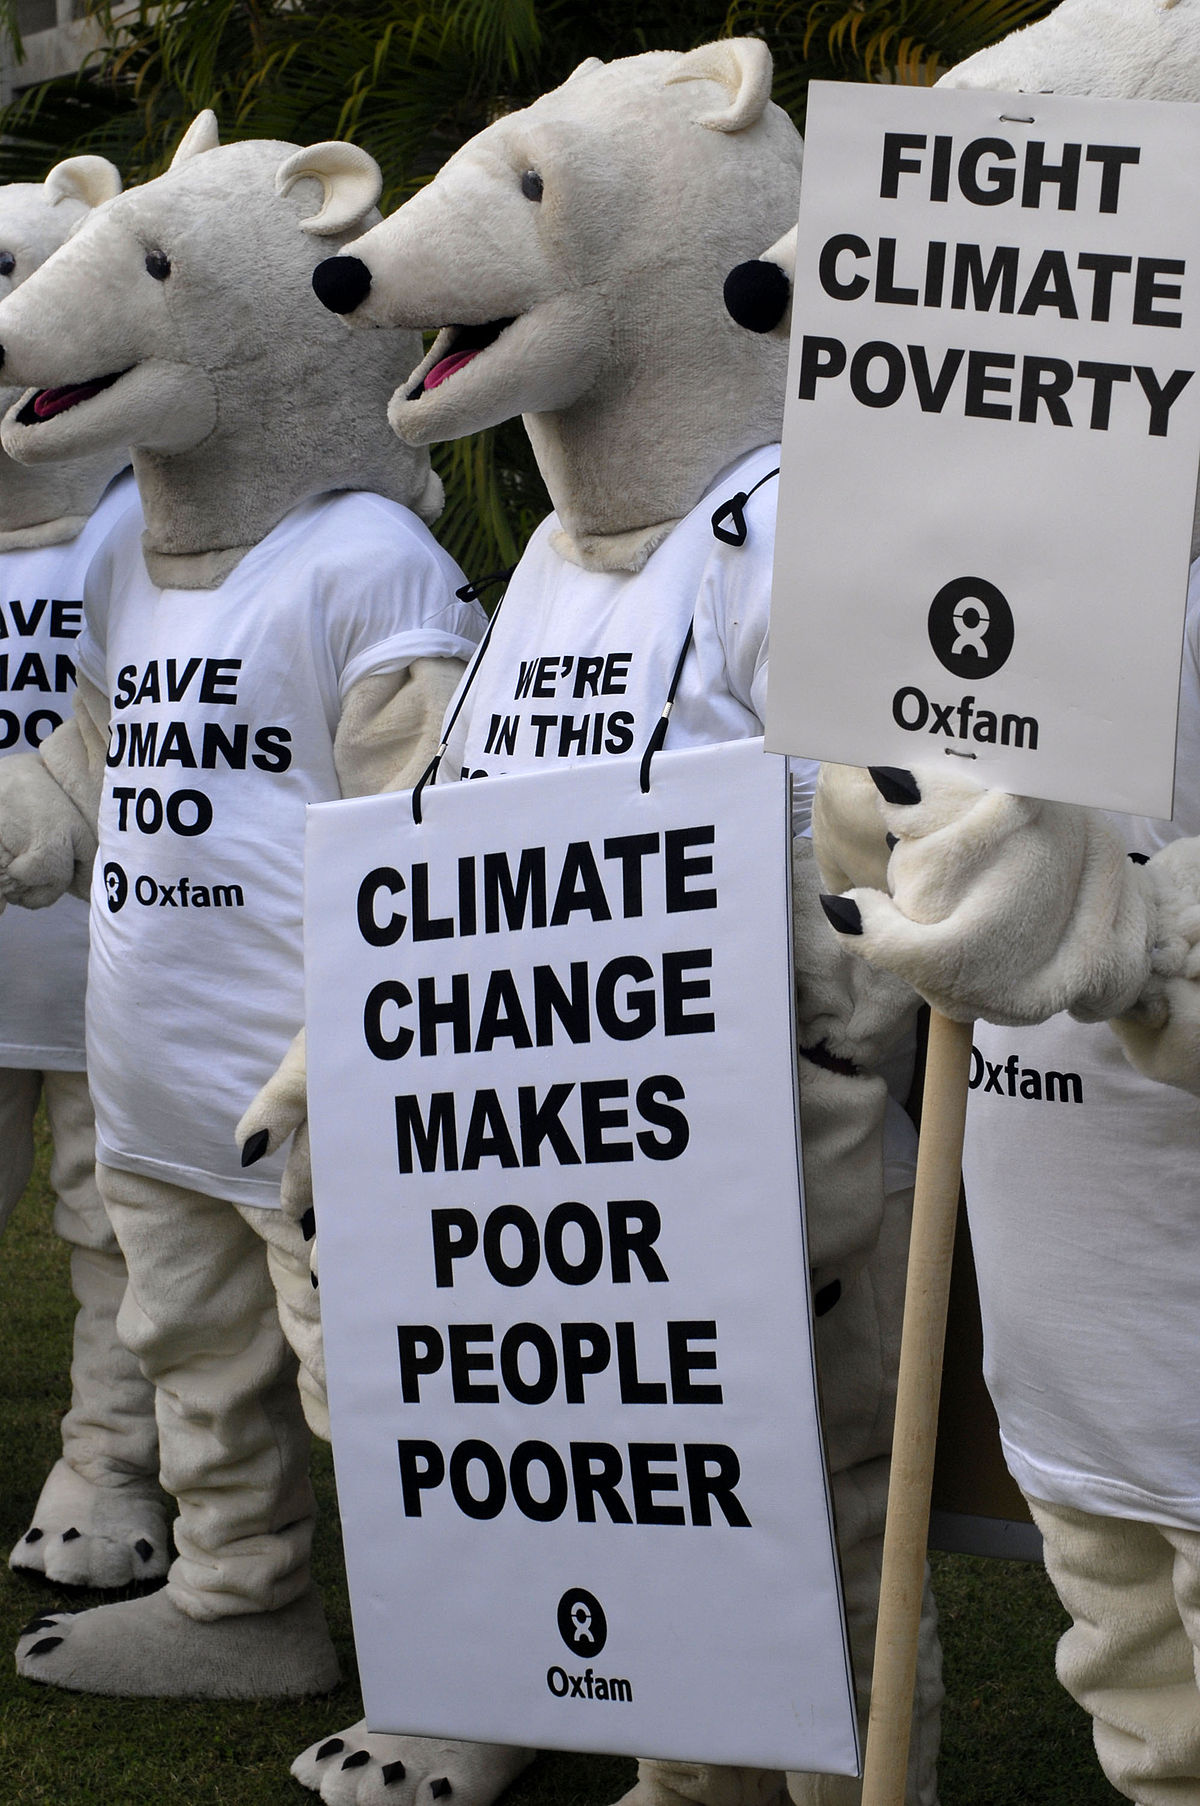 التغيرات المناخية وتأثيرها على الفقراء